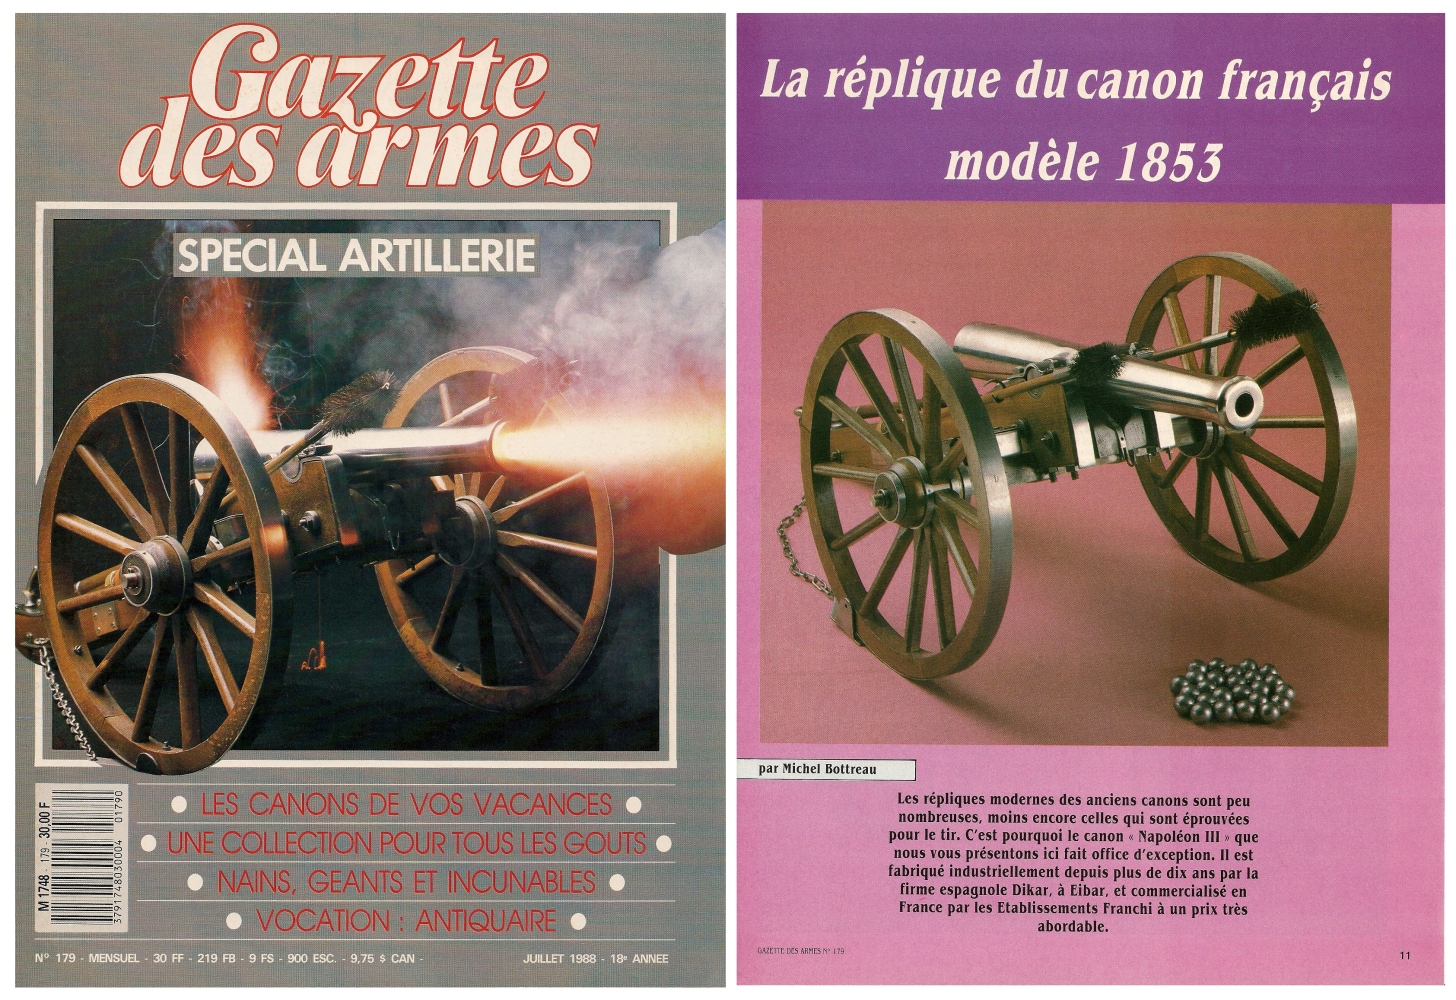 Le banc d’essai de la réplique du canon français modèle 1853 a été publié sur 6 pages dans le magazine Gazette des Armes n°179 (juillet 1988).